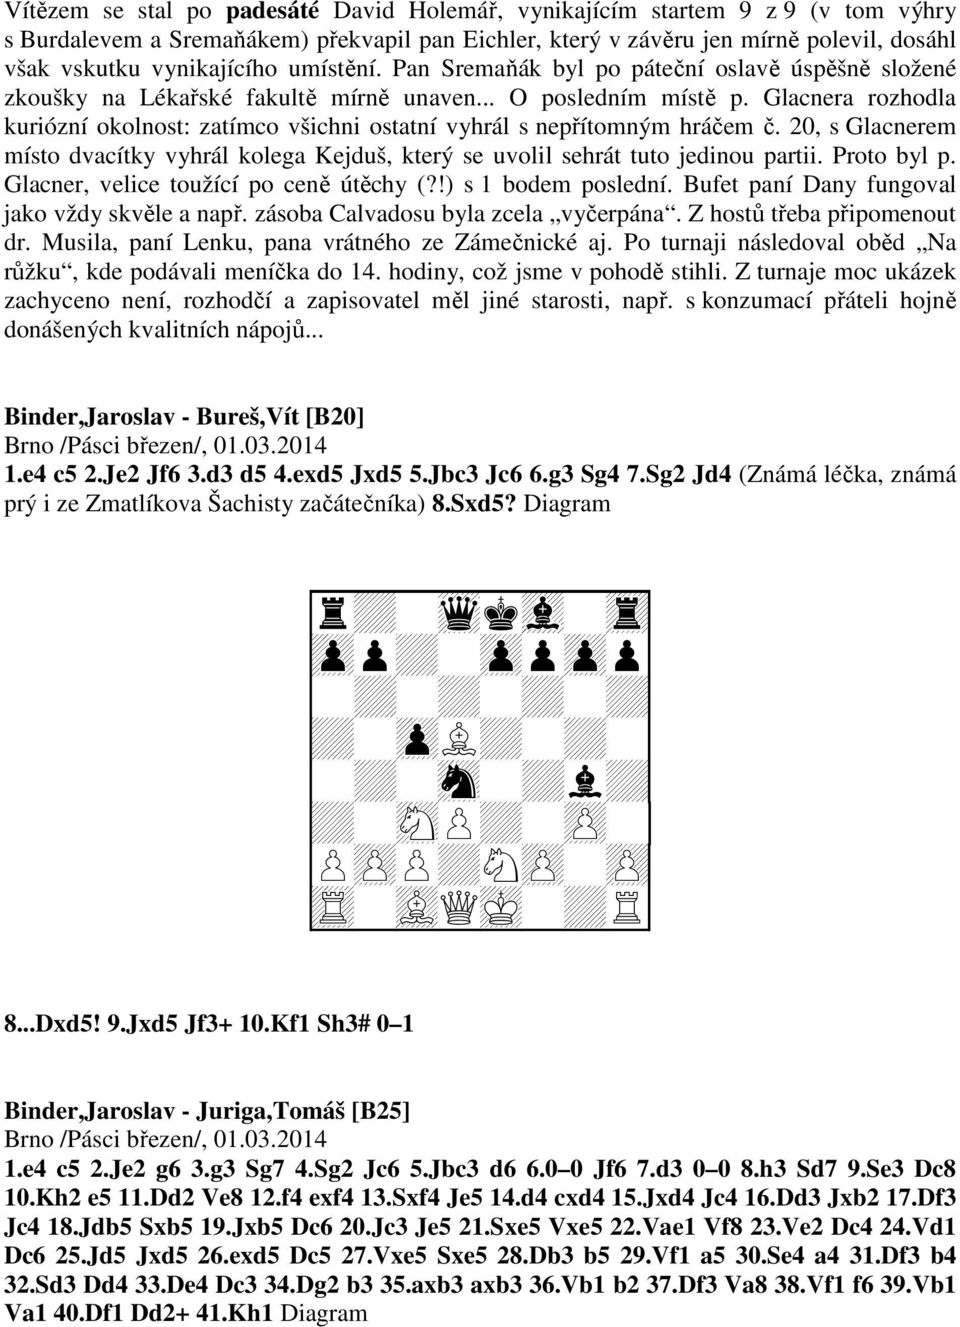 Glacnera rozhodla kuriózní okolnost: zatímco všichni ostatní vyhrál s nepřítomným hráčem č. 20, s Glacnerem místo dvacítky vyhrál kolega Kejduš, který se uvolil sehrát tuto jedinou partii.